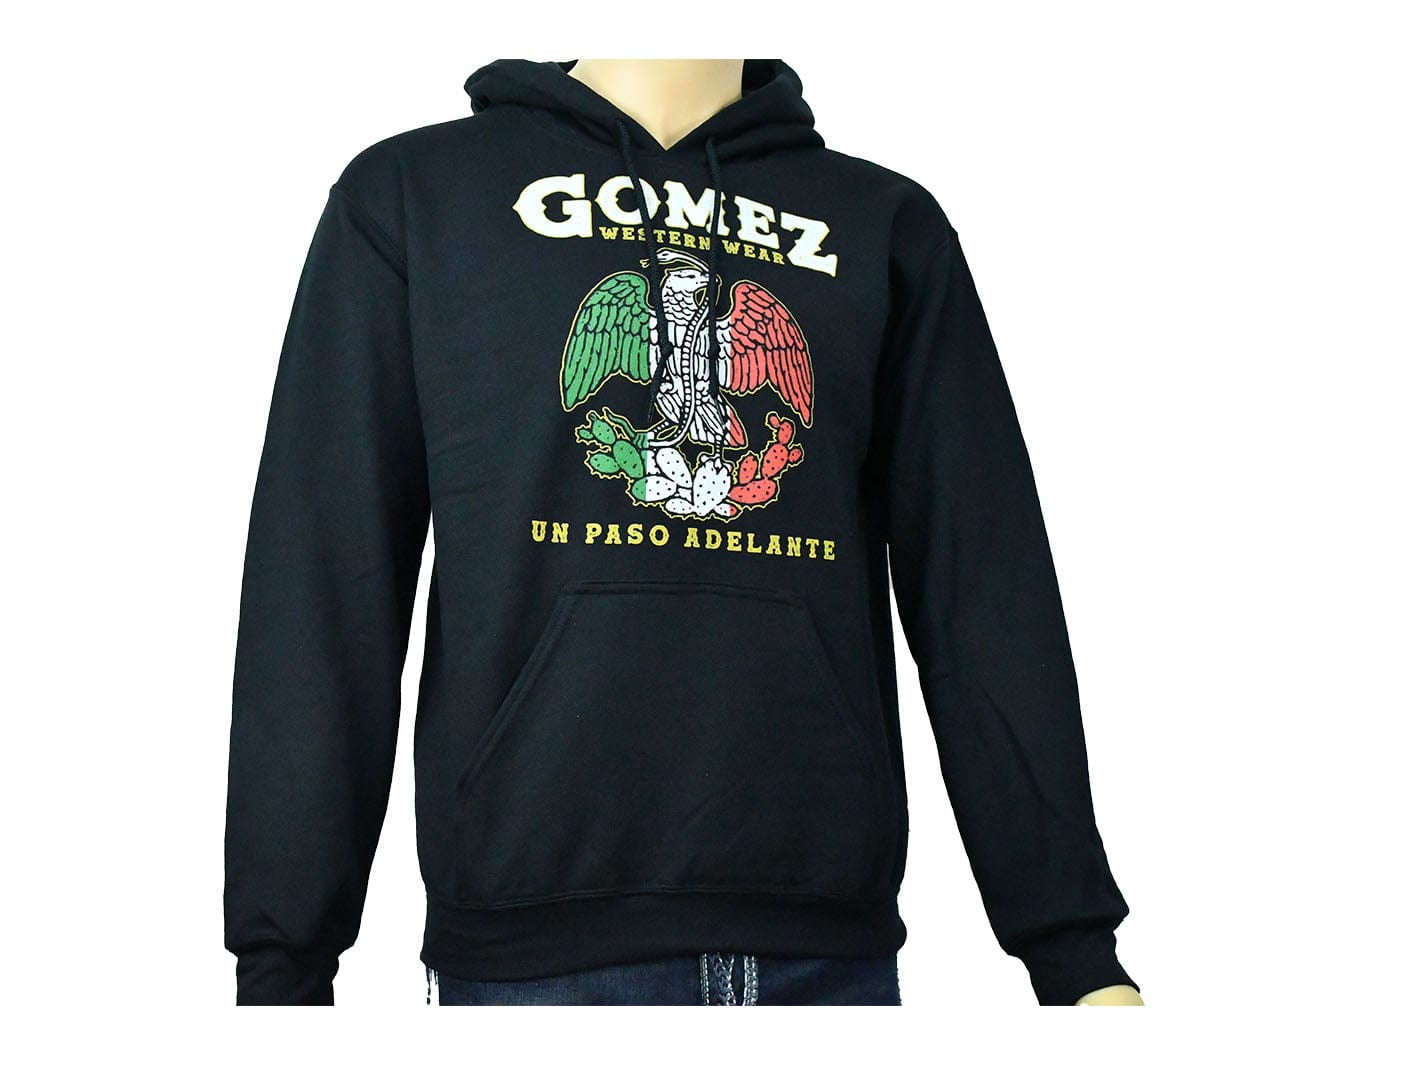 Gomez Western Wear Hoodie Sweatshirt